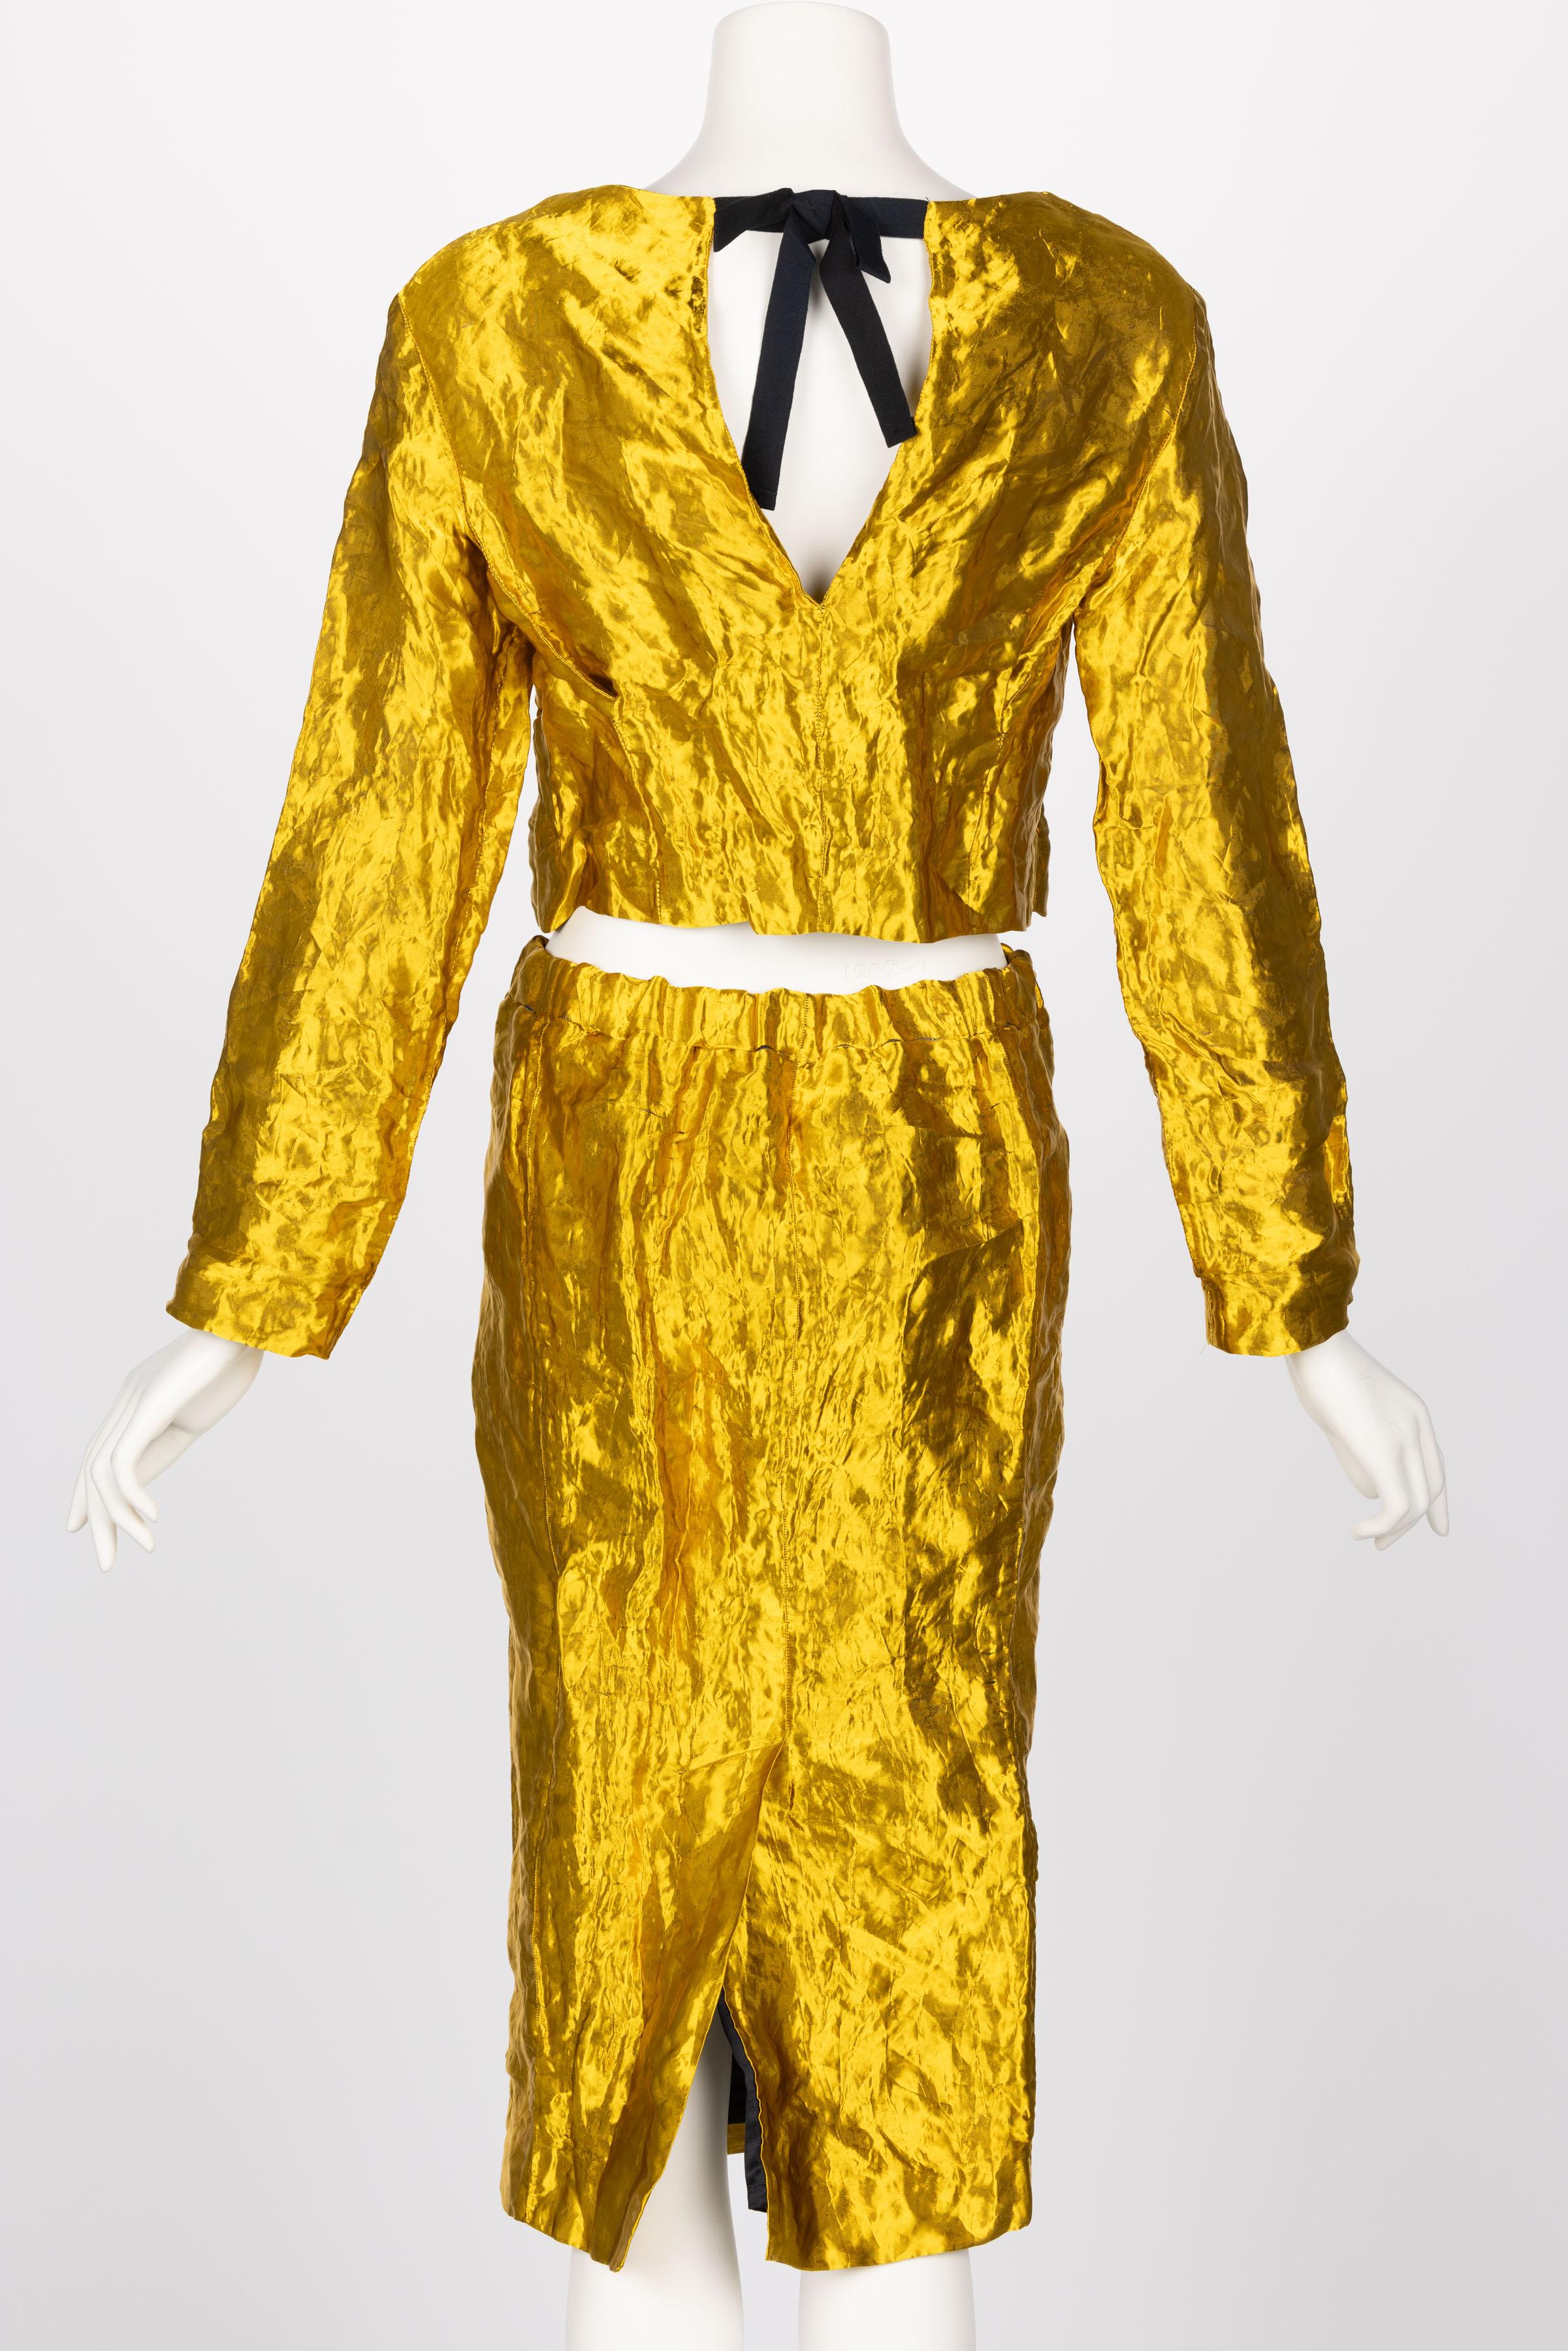 Prada Gold Metal Jacket Top & Skirt Set Spring 2009 2